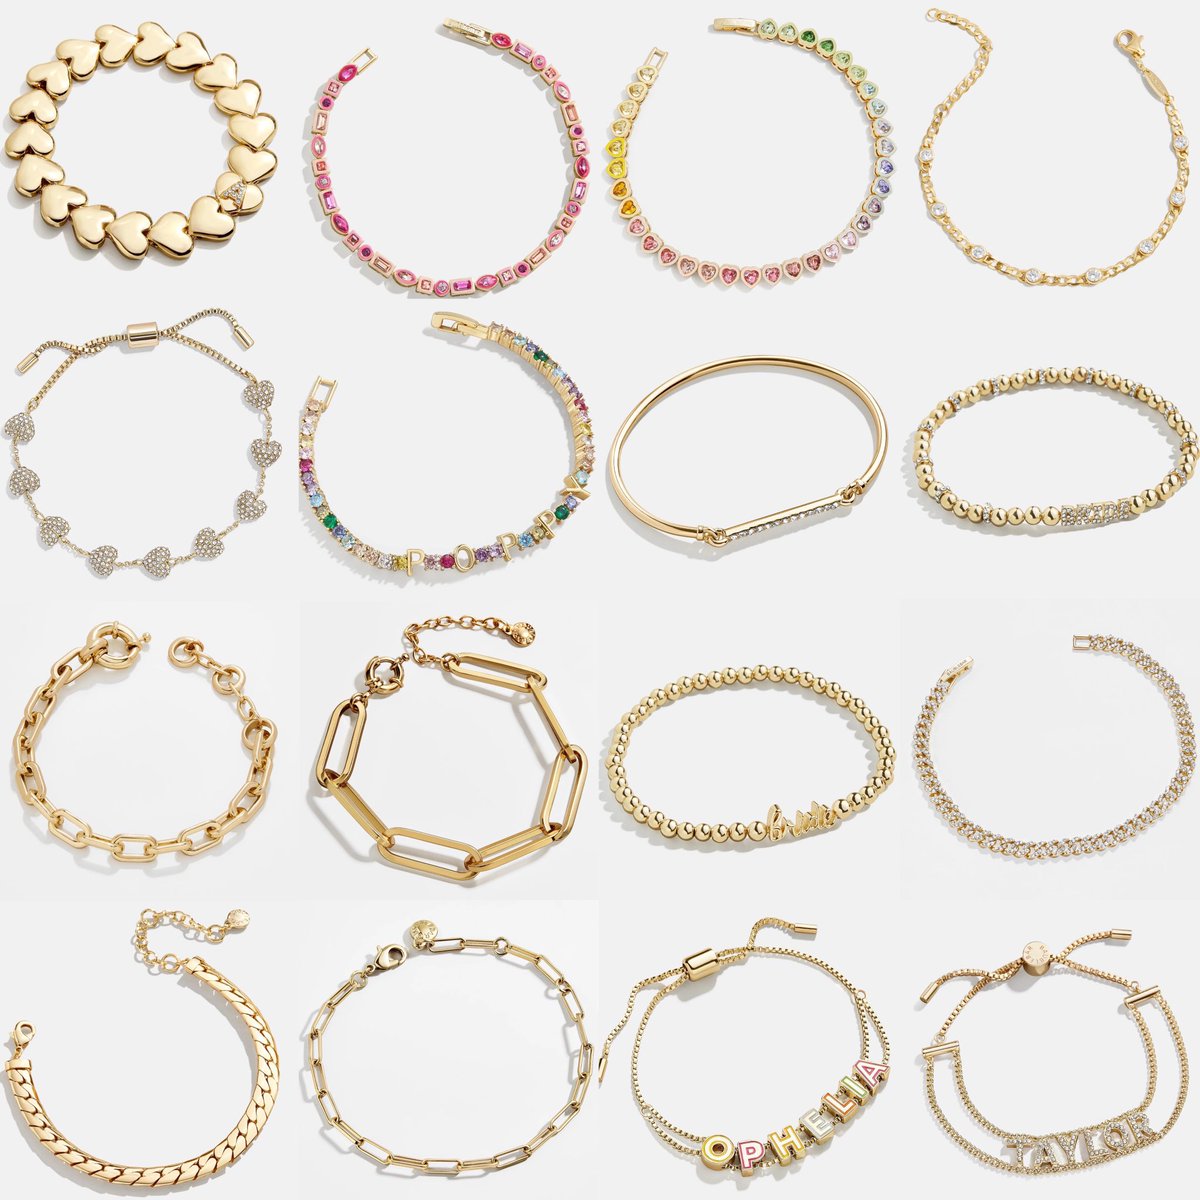 BAUBLEBAR bracelet (extra sale) 🔥✨🫧 อีกหนึ่ง jewelry แบรนเมการาคาไม่แรงแต่คุณภาพดีแถมดีไซน์สวยเกร๋ timeless

รุ่น custom ก็ร่วมลดด้วยนะคะ 
ลดราราพิเศษถึงแค่วันอาทิตย์ 17/3 นี้น้า 🚫